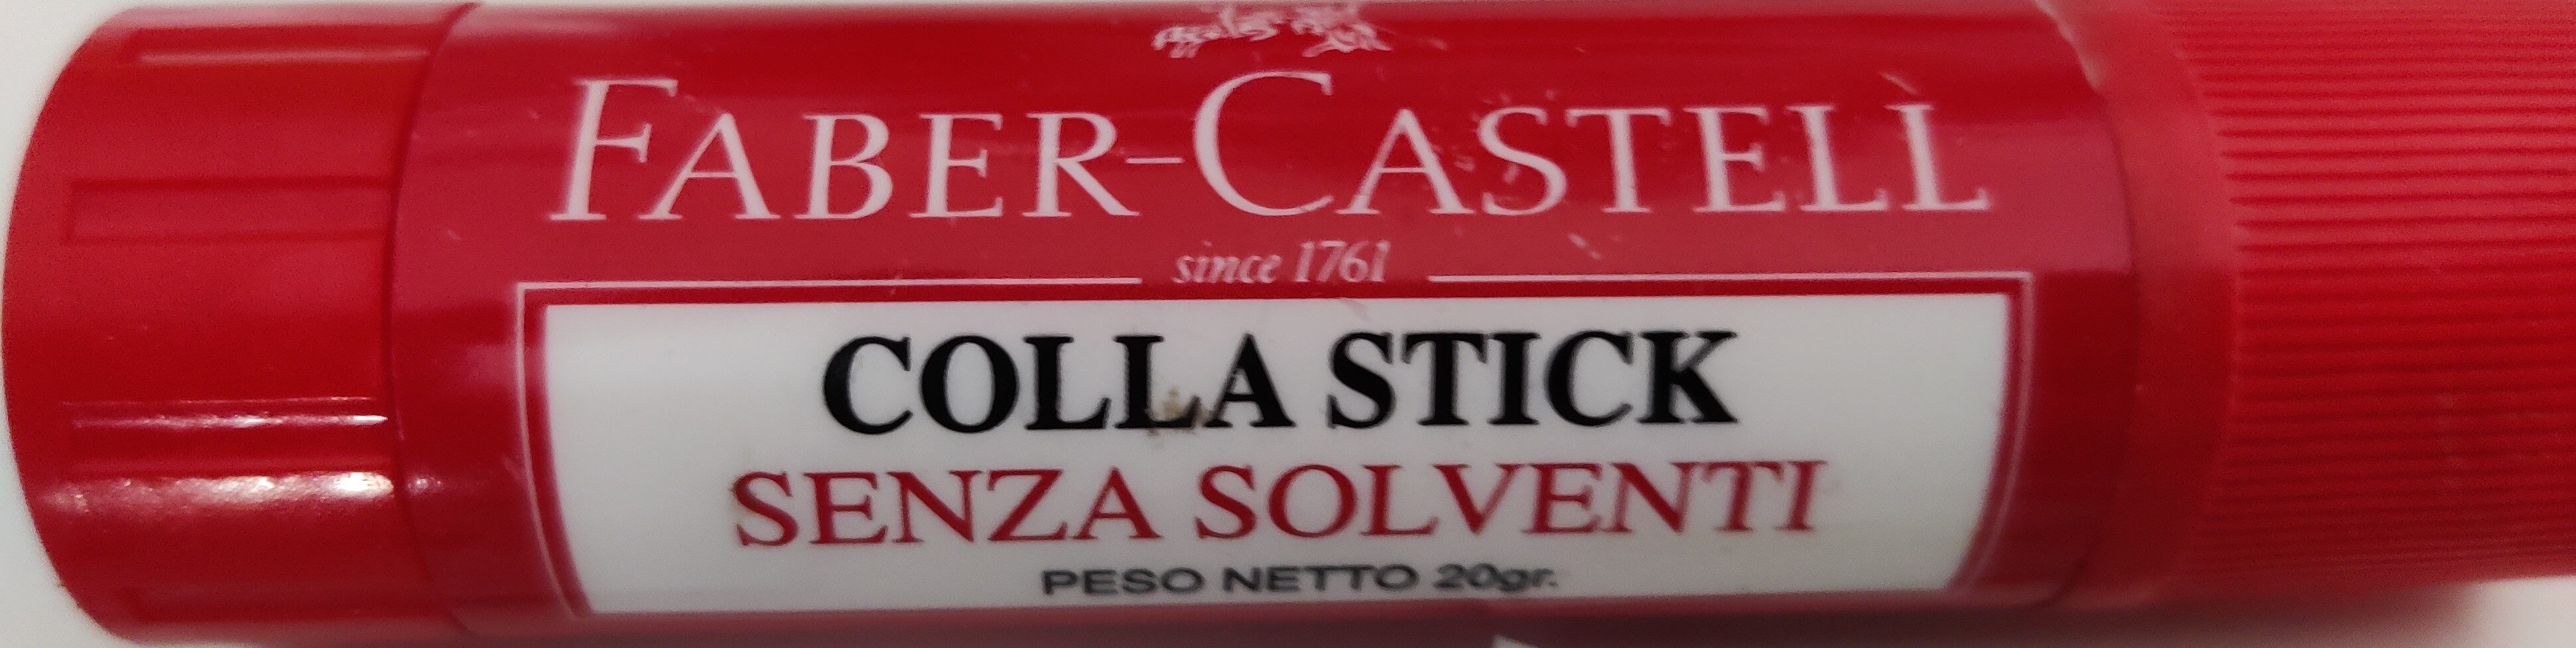 Colla stick - Produit - it